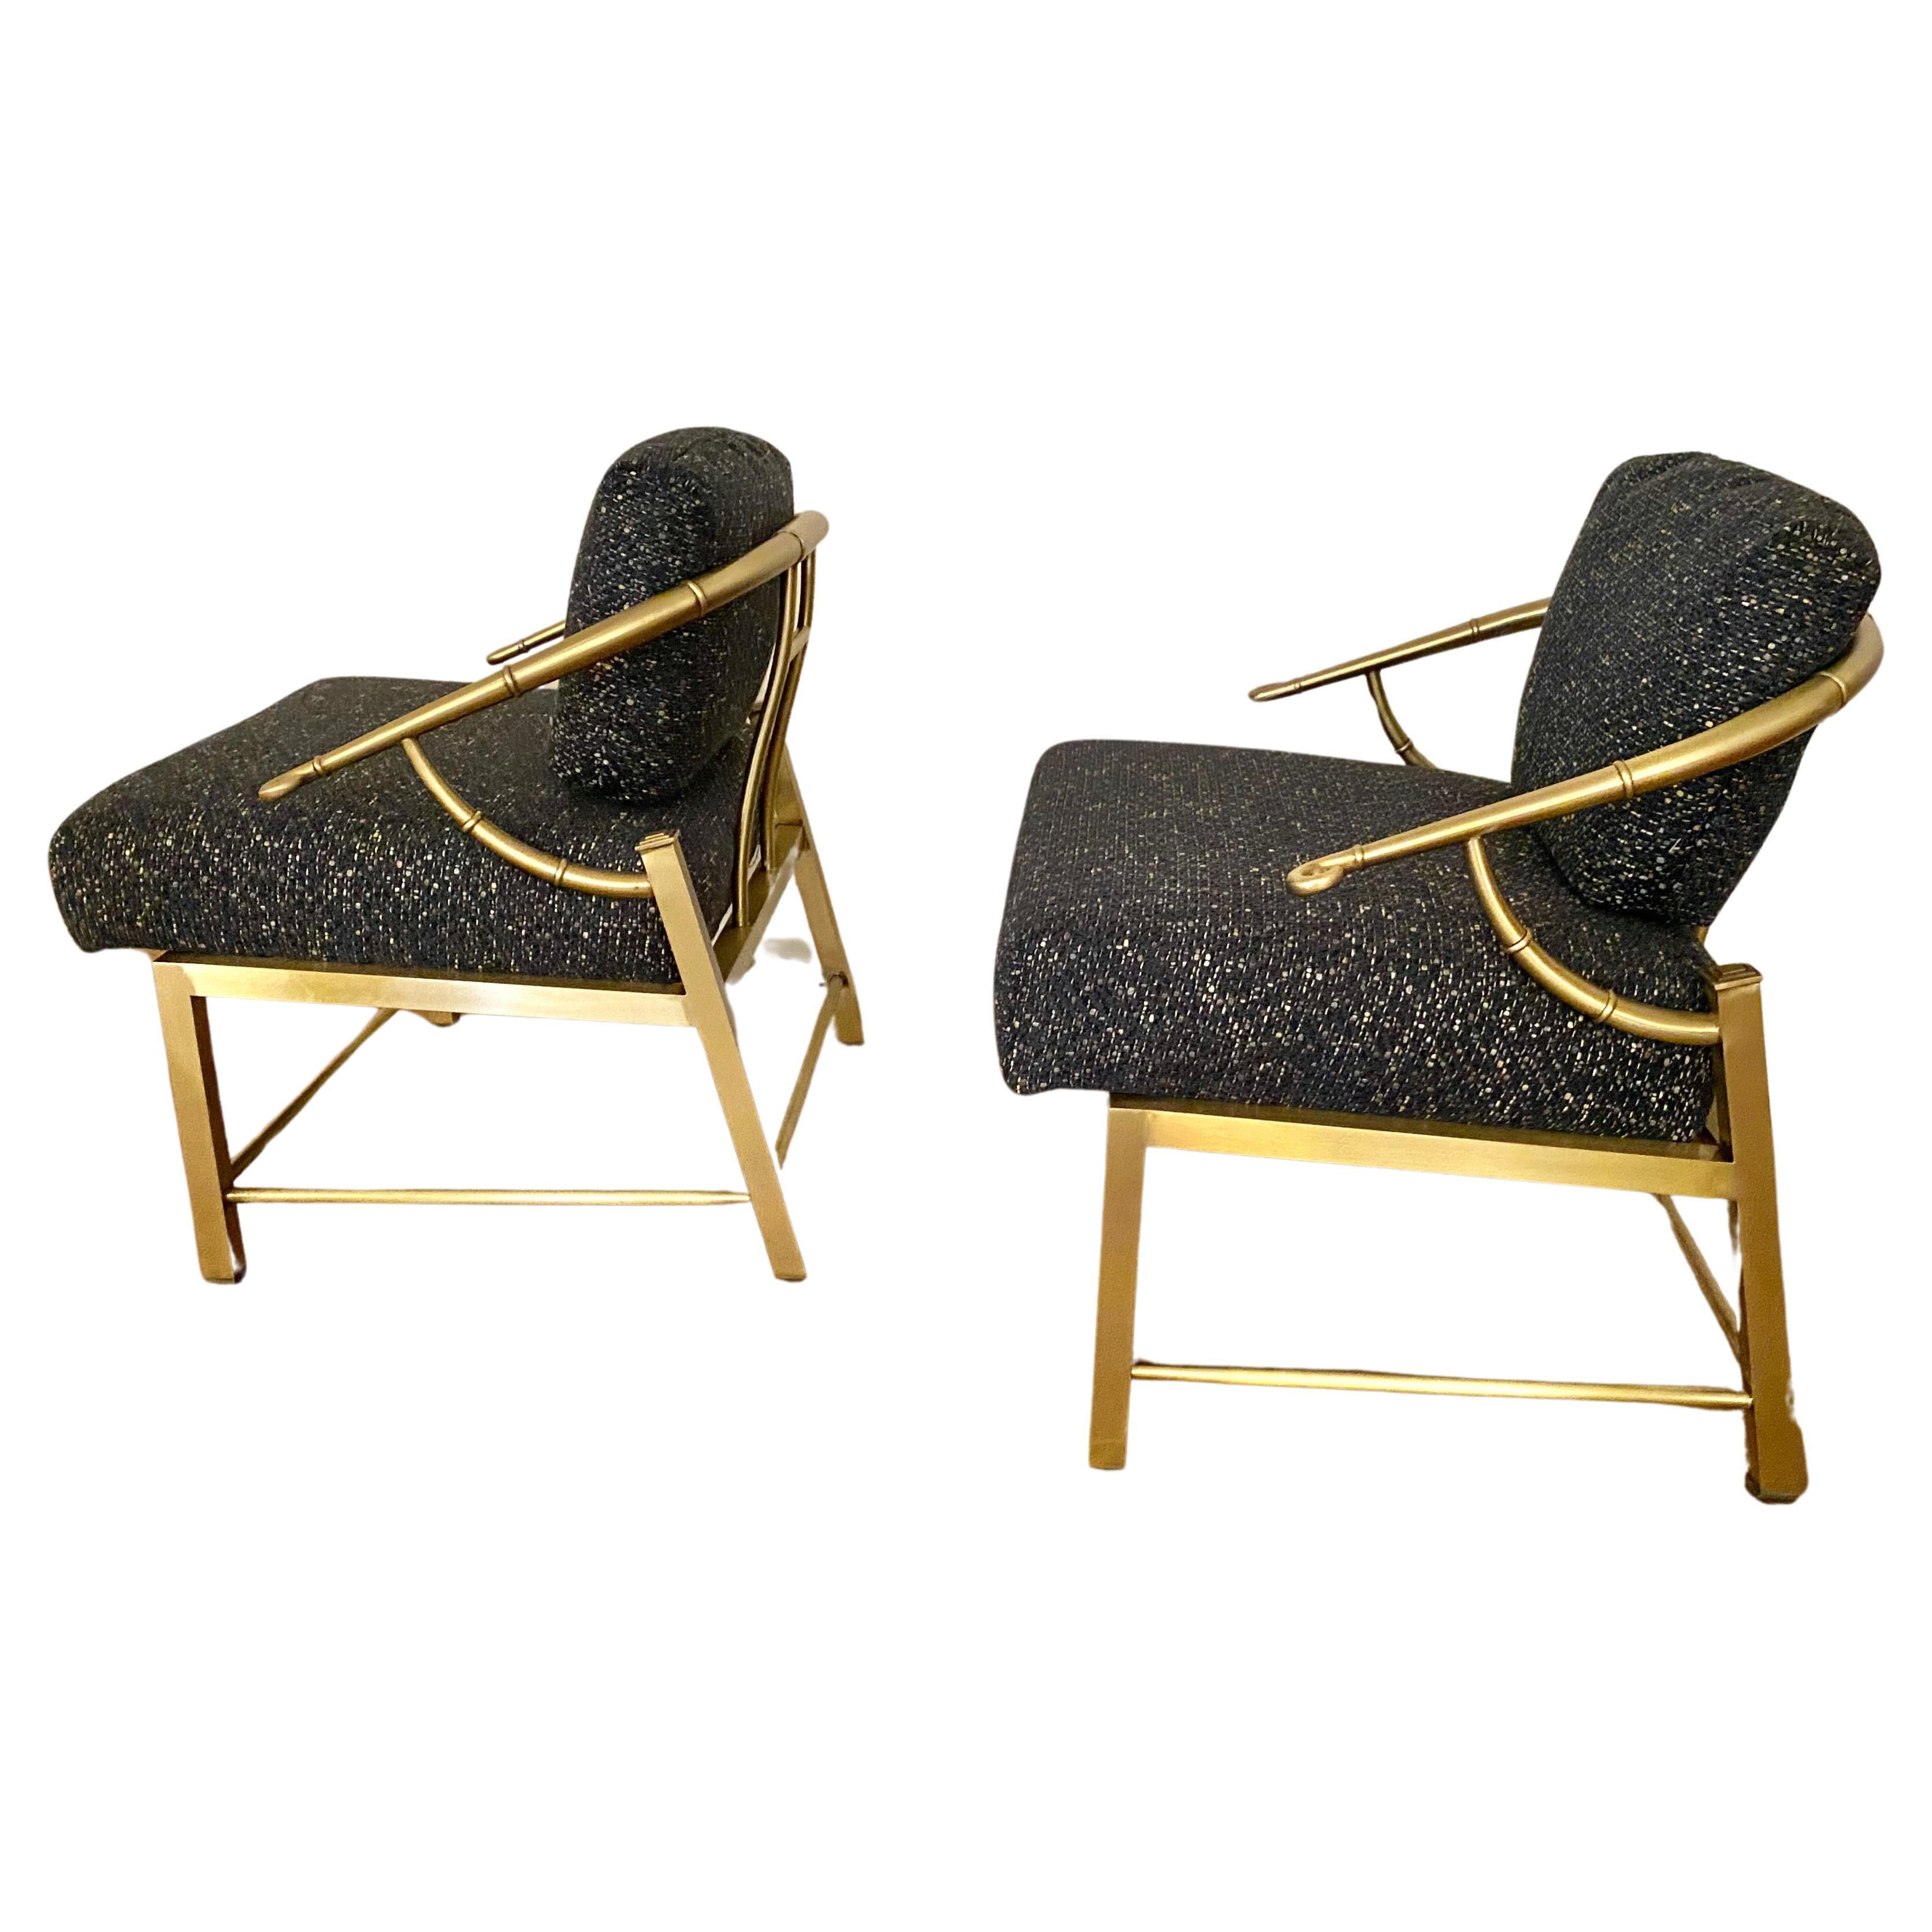 Dies ist ein Paar ikonische Mastercraft Messing chinesischen Stil Hufeisen Stühle, die auf die c. 1970-1980. Beide Stühle sind in ausgezeichnetem Zustand - ihre Gestelle wurden poliert und sie sind neu mit einem handgewebten Stoff gepolstert. Beide